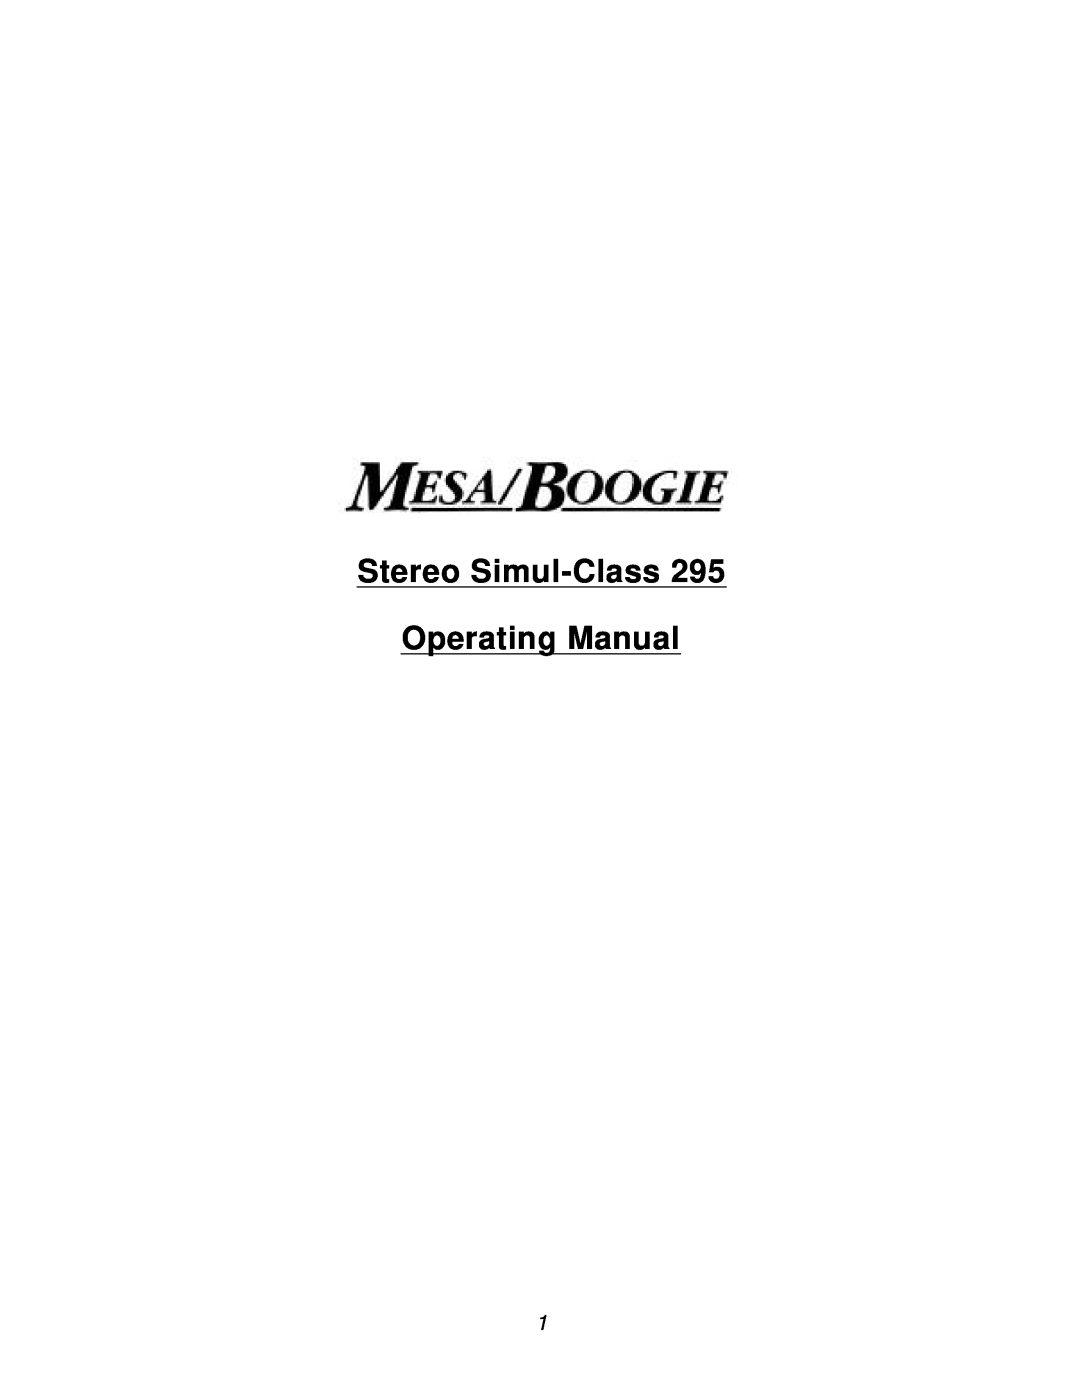 Mesa/Boogie manual Stereo Simul-Class295, Operating Manual 